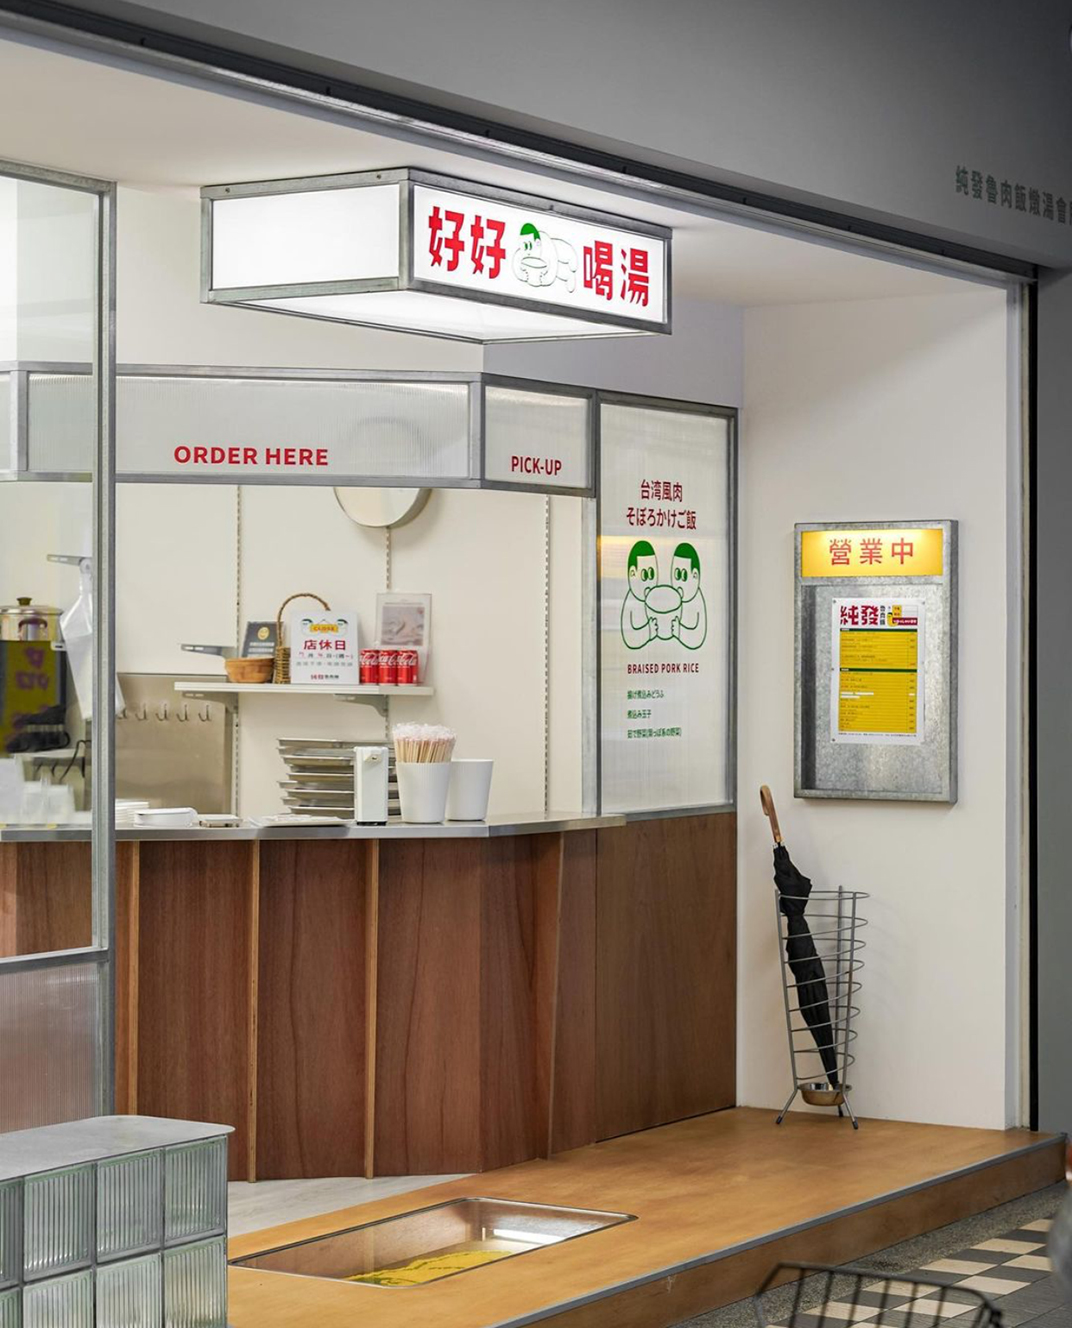 莼发鲁肉饭 好好喝汤 台湾 快餐店 卤肉饭 汤 太阳板 玻璃砖 亚克力 黄绿色 logo设计 vi设计 空间设计